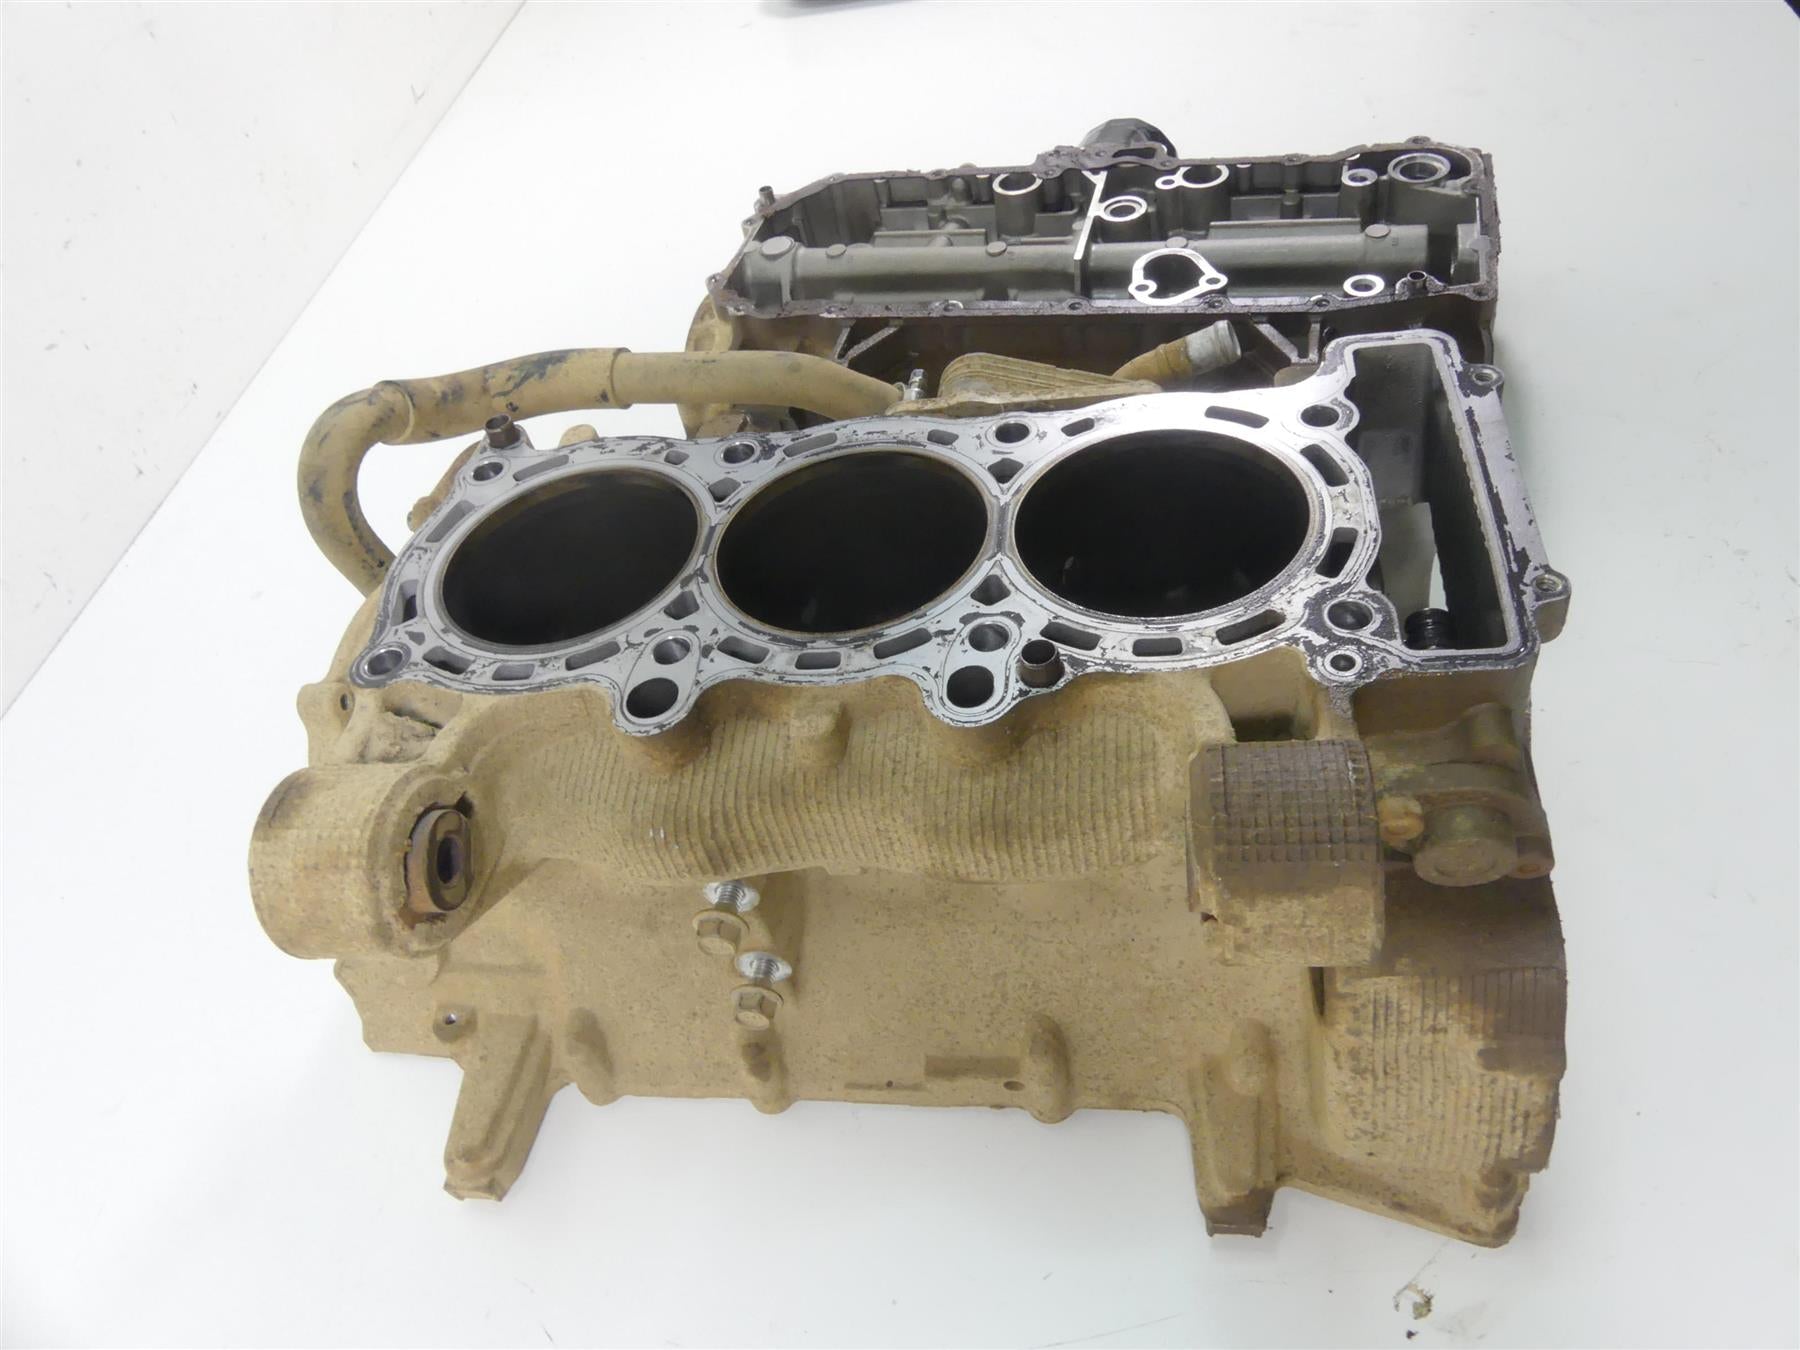 2016 Yamaha YXZ1000 R EPS SE Engine Motor Crank Case Set 2HC-15109